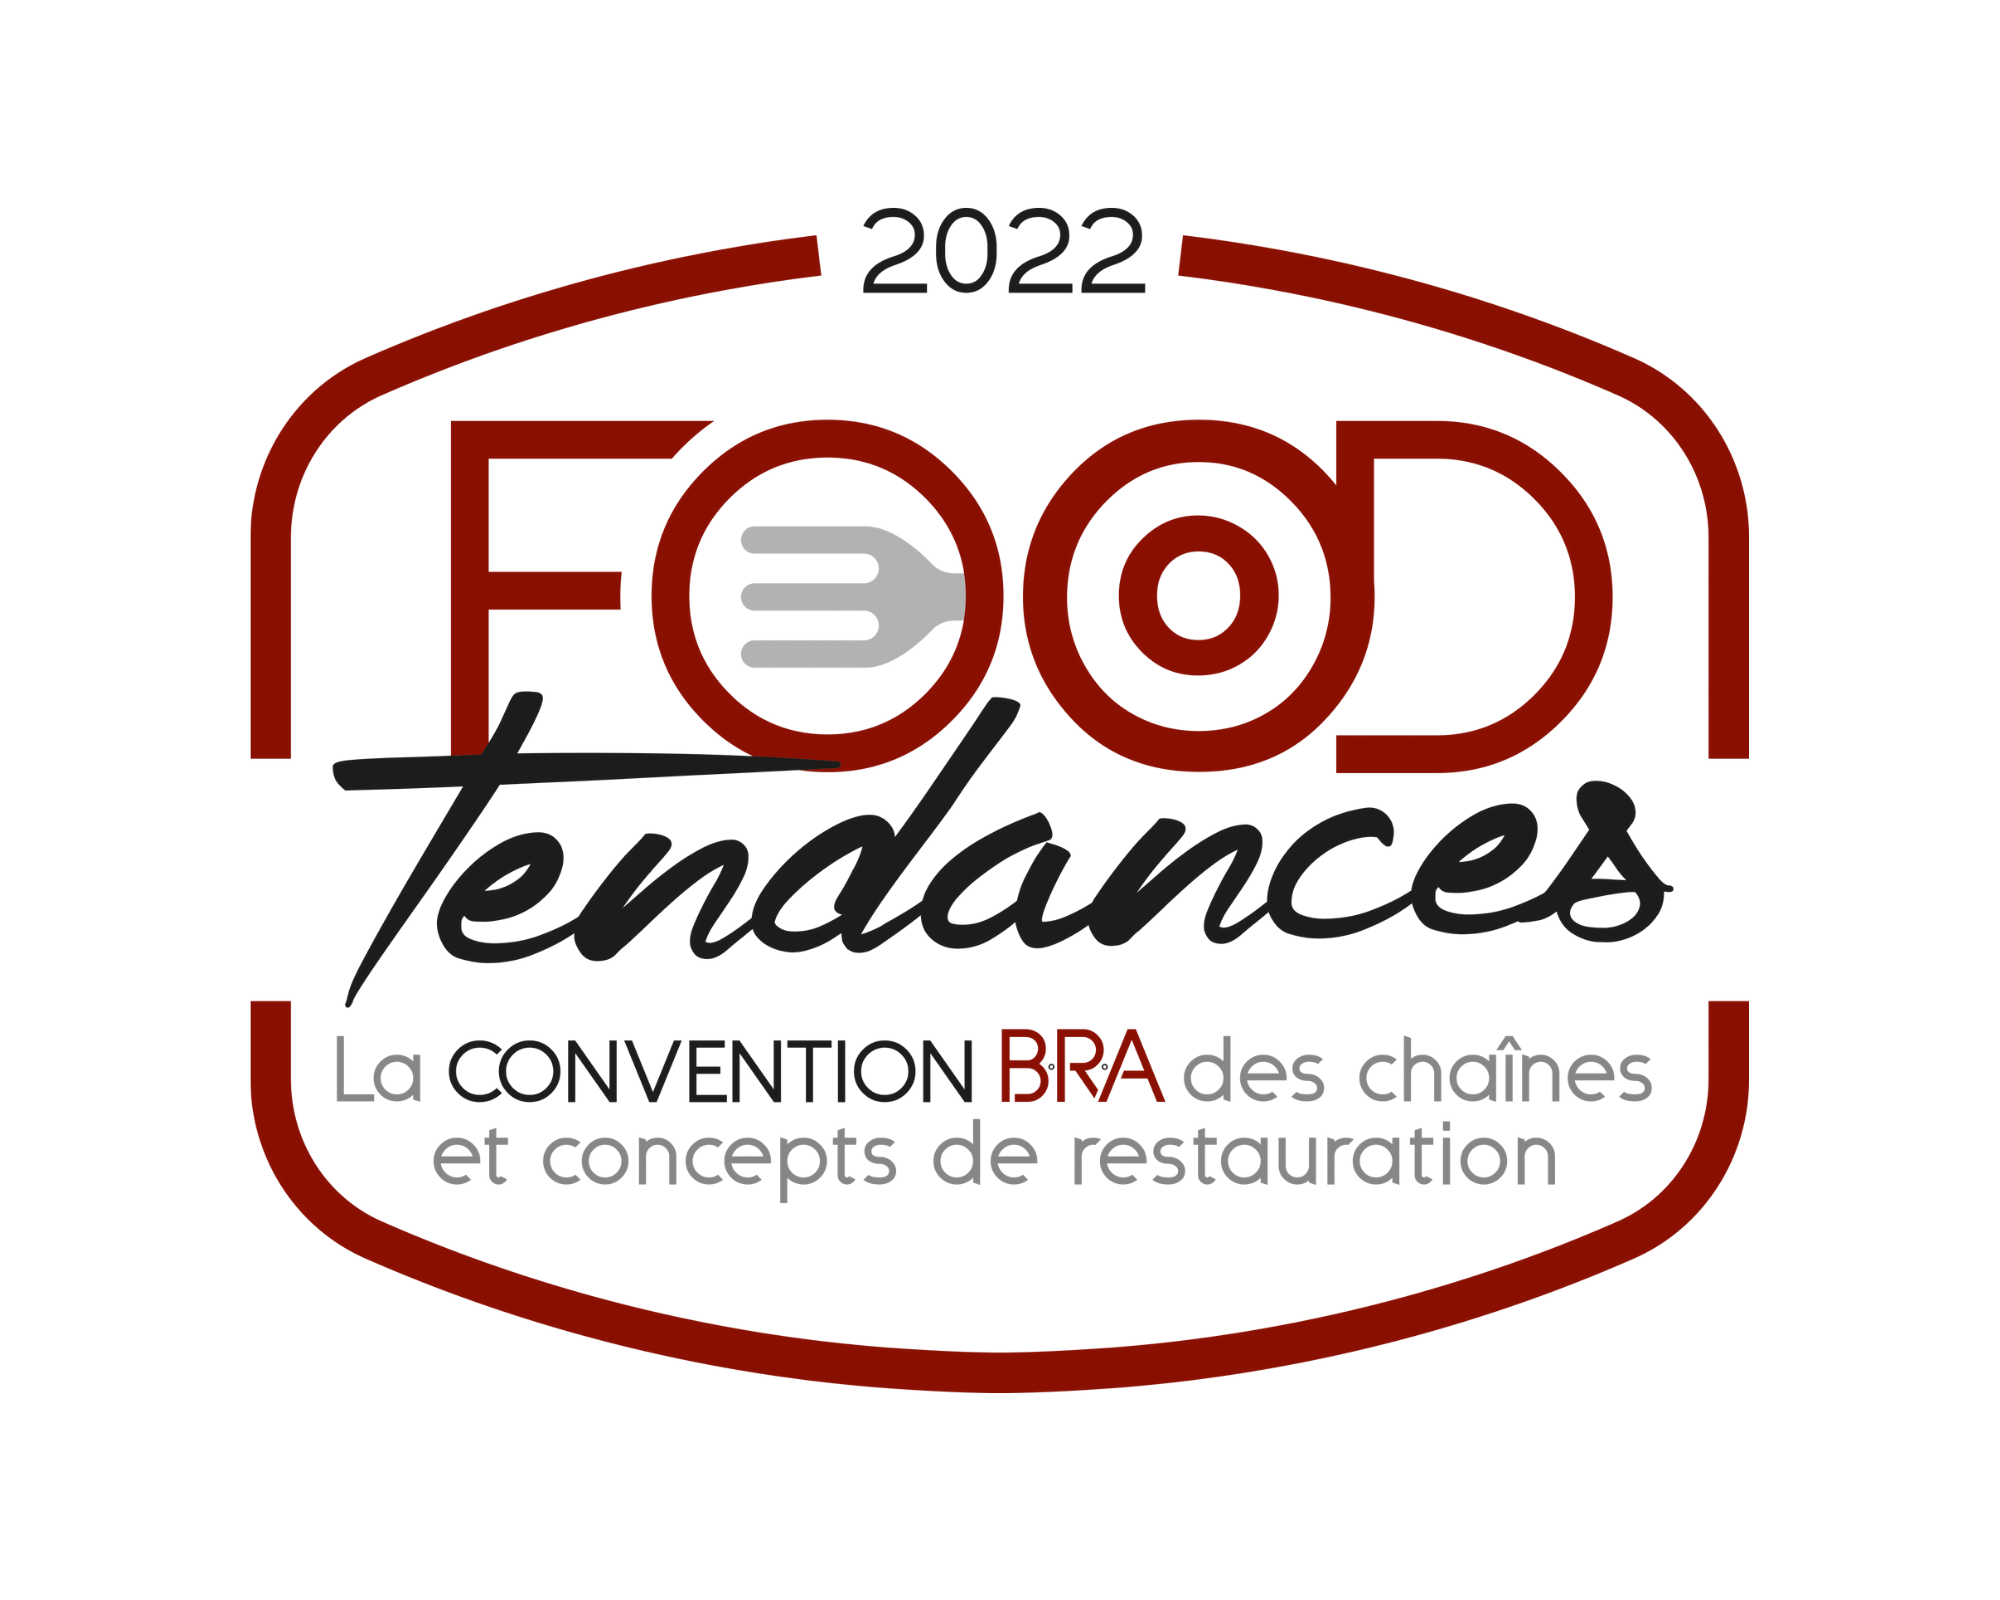 Inscrivez-vous à #FoodTendances, la Convention B.R.A. 2022, le 7 avril à Paris